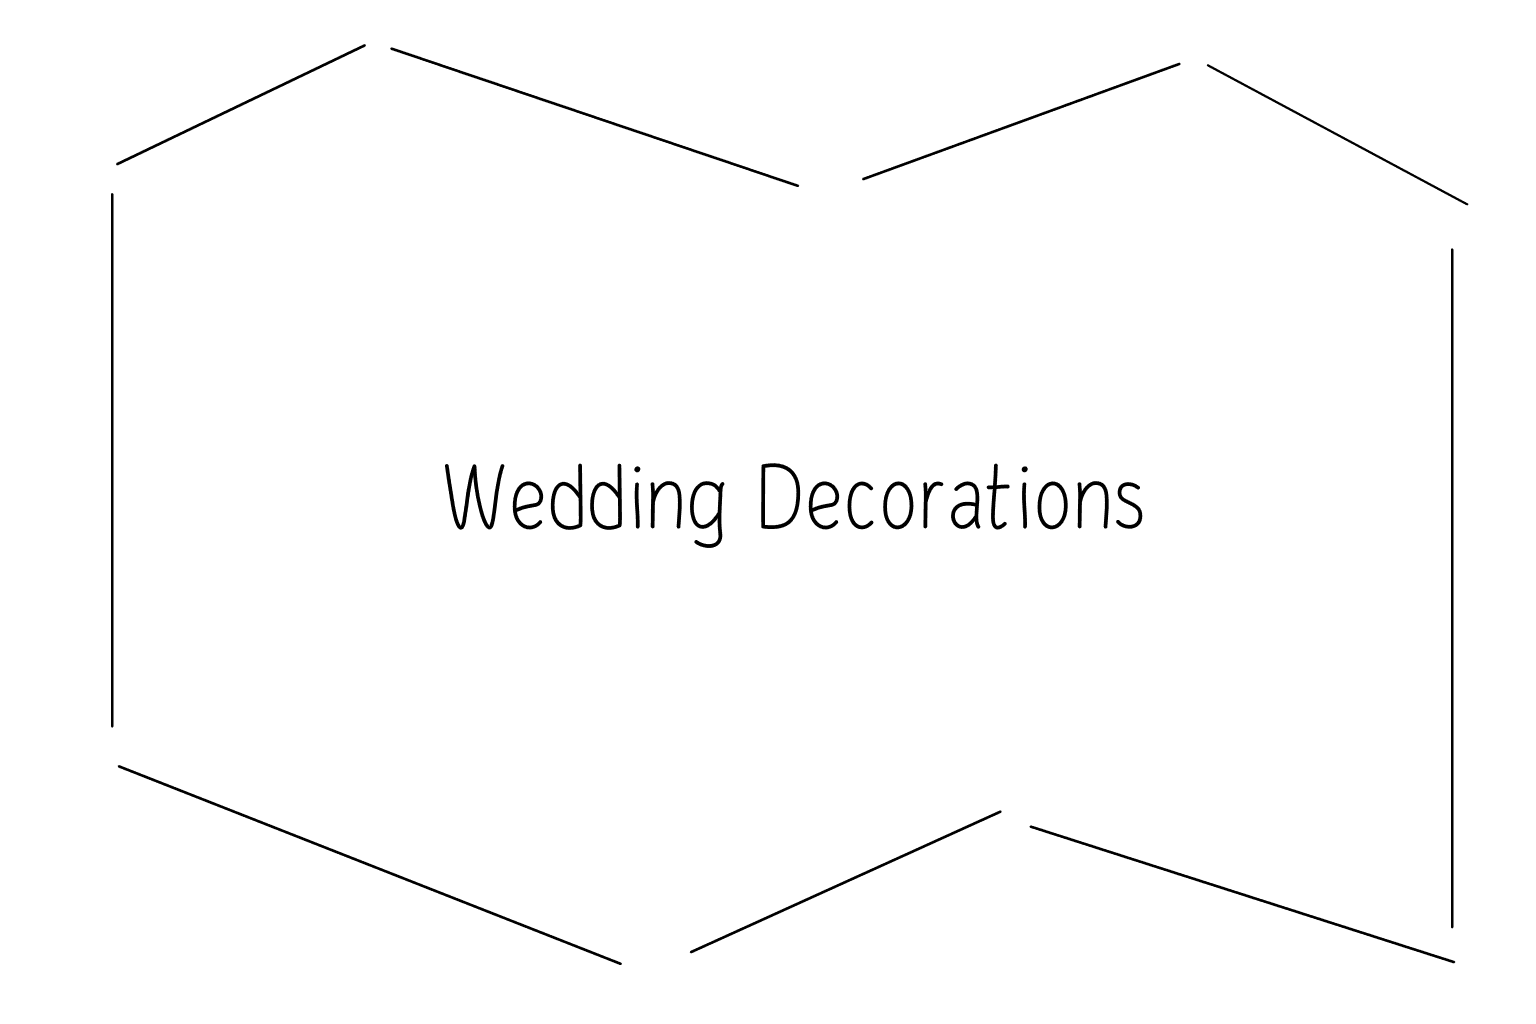 Ilustração da decoração do casamento